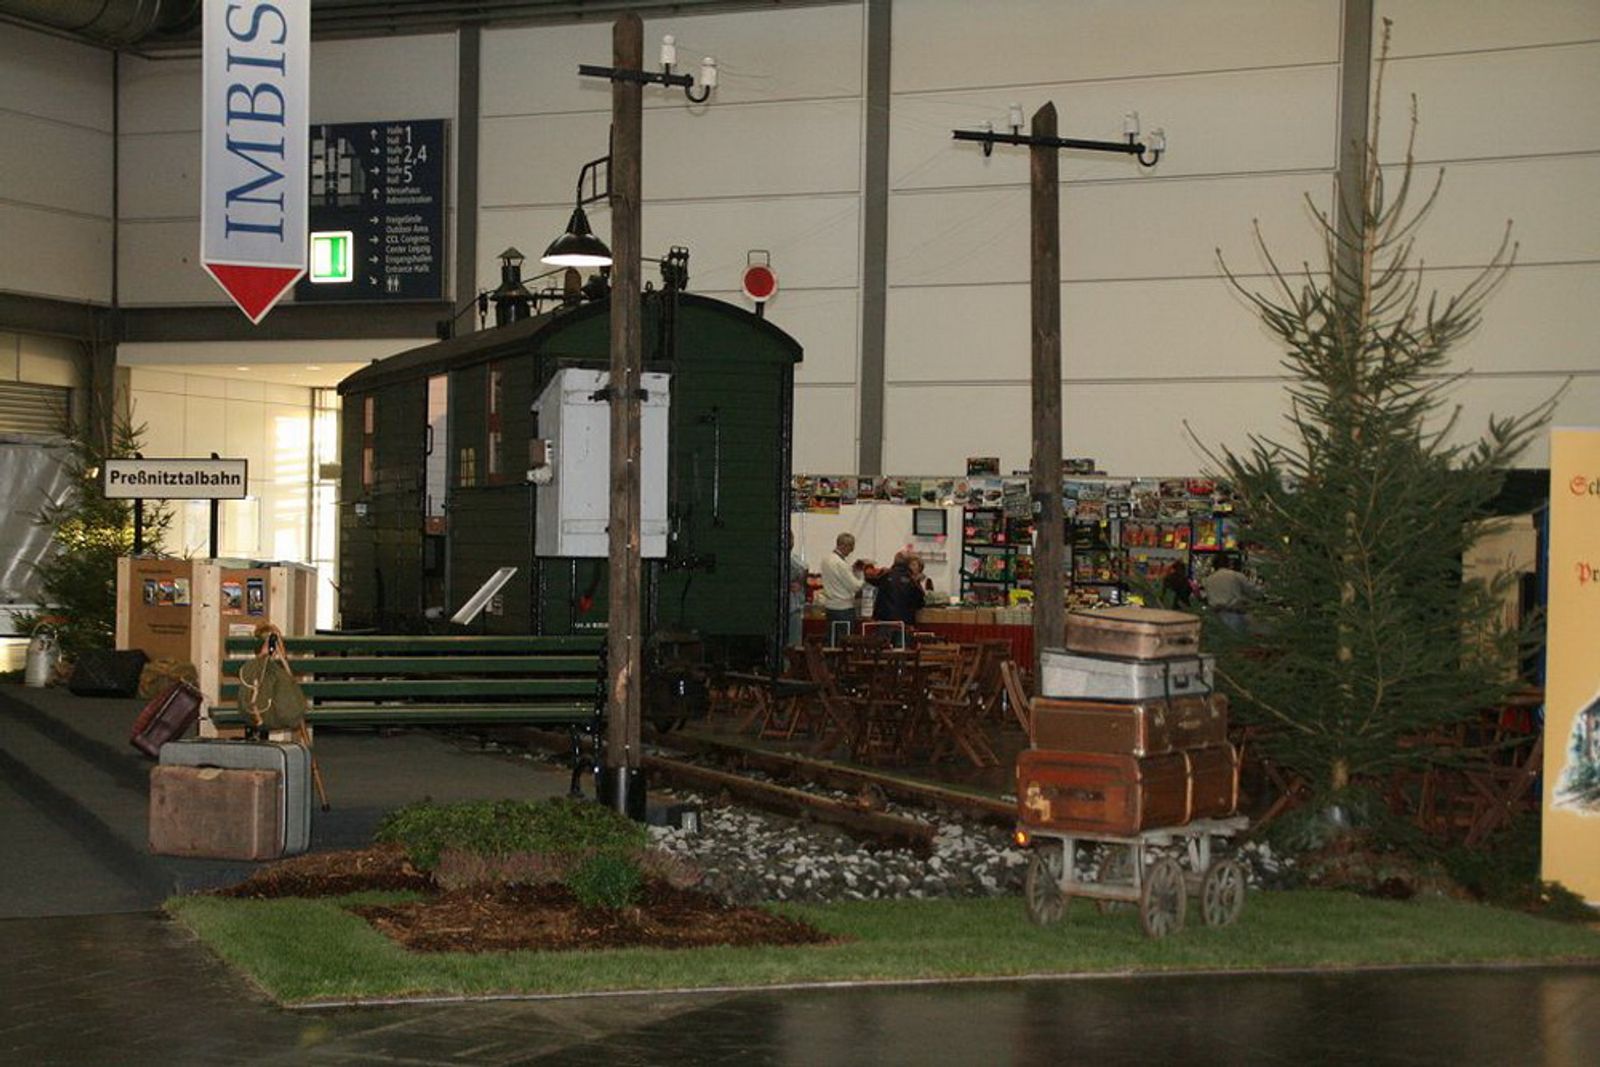 Ein richtiges Eisenbahn-Diorama in Originalgröße wurde von der Preßnitztalbahn auf die Messe gestellt.